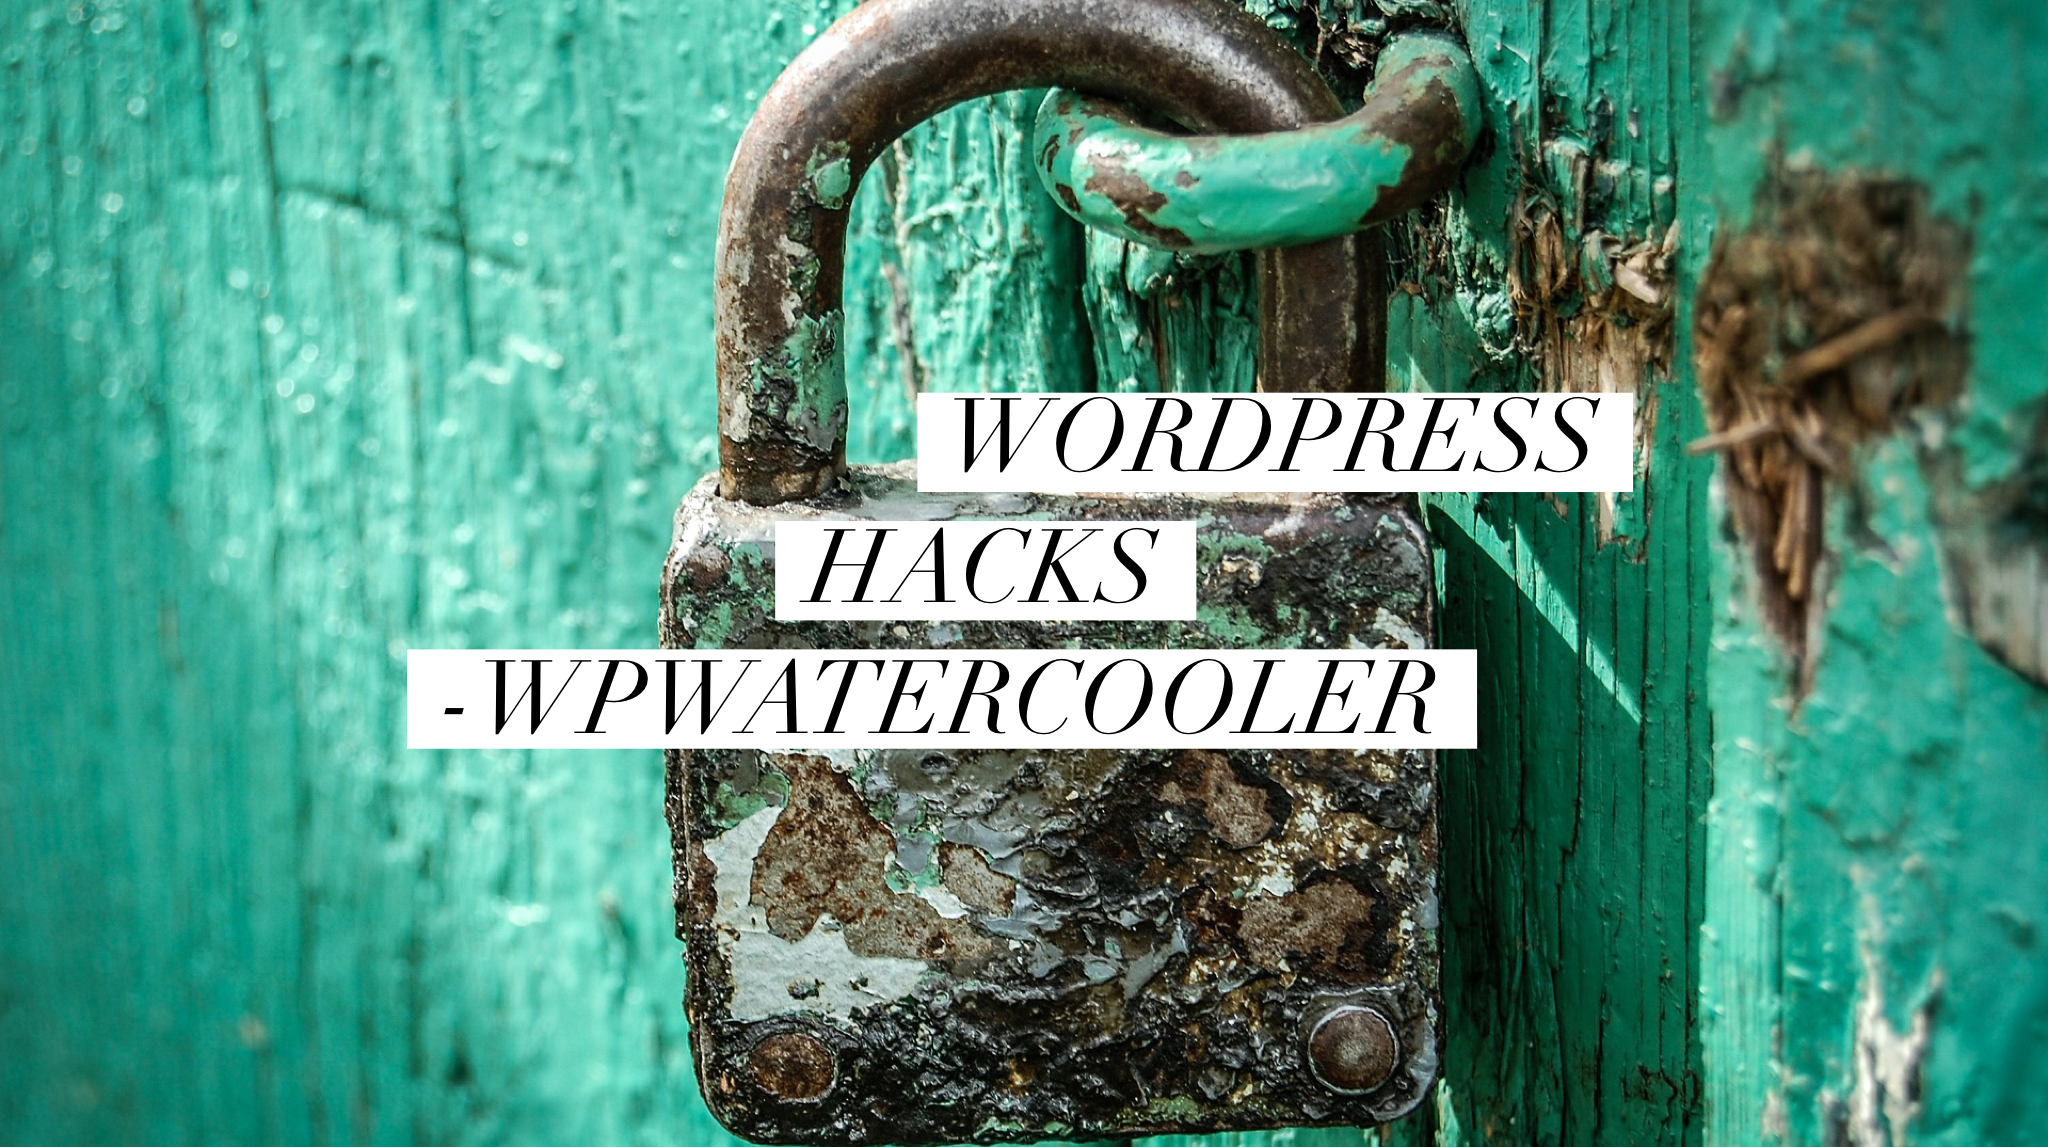 EP286 - WordPress Hacks